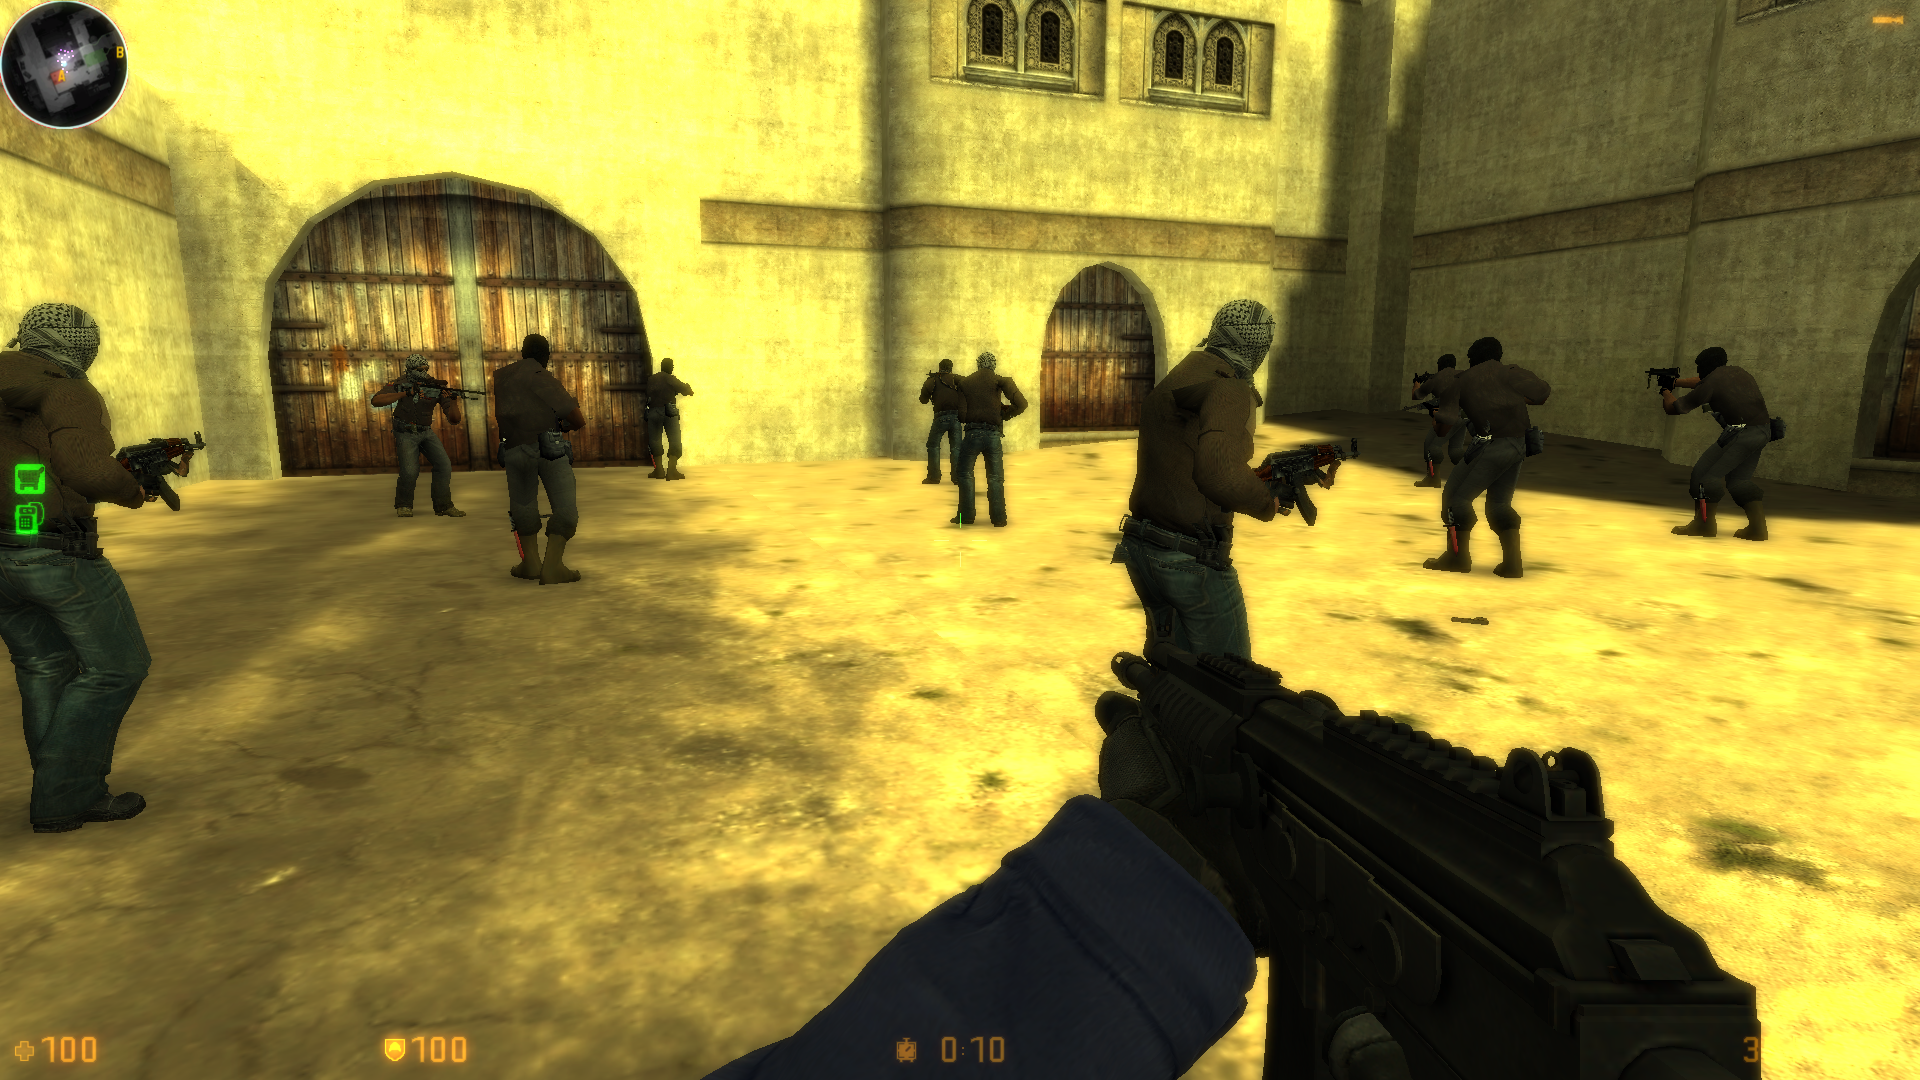 Counter shoot - global offensive Ver. 1.0.6 MOD APK